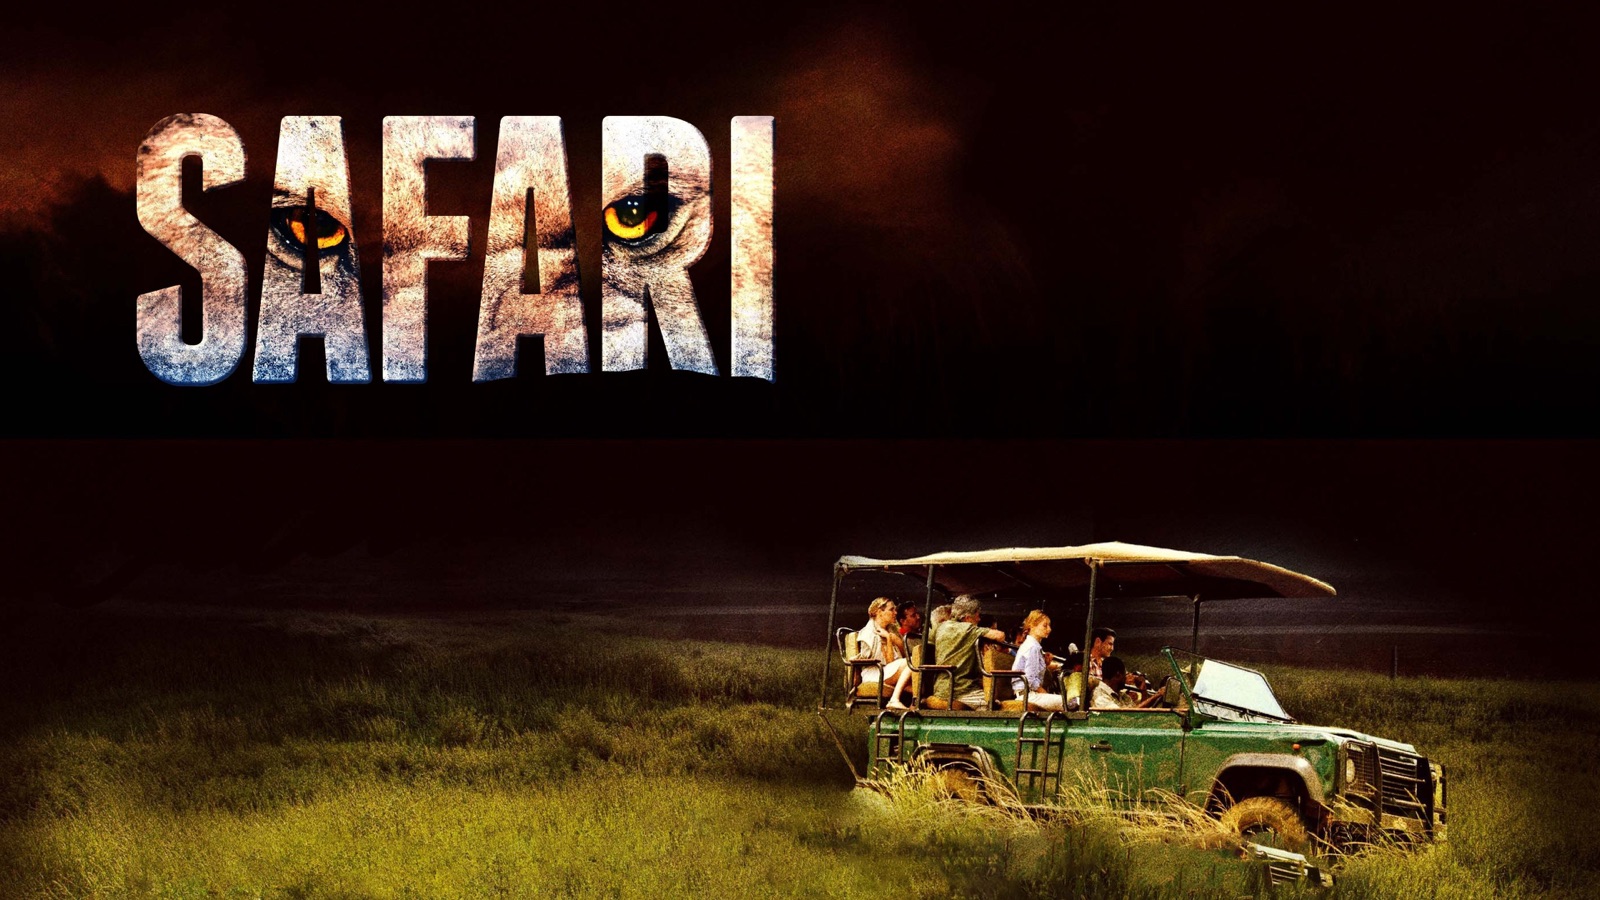 safari 4x4 tv program